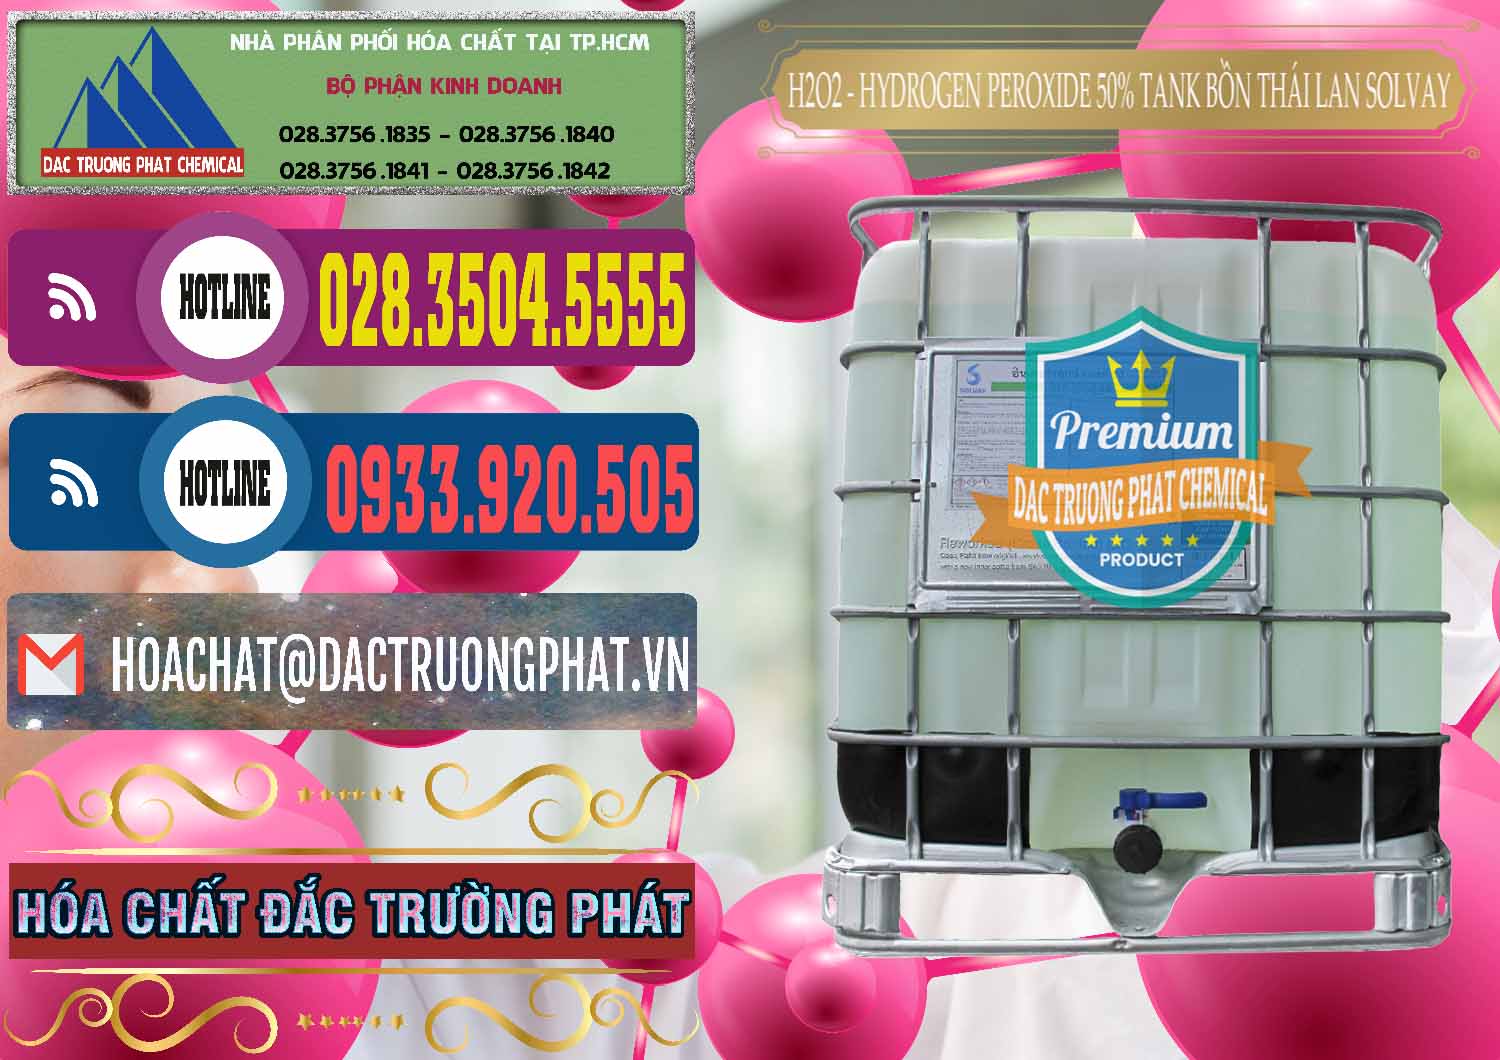 Công ty nhập khẩu - bán H2O2 - Hydrogen Peroxide 50% Tank IBC Bồn Thái Lan Solvay - 0072 - Cty chuyên kinh doanh - cung cấp hóa chất tại TP.HCM - muabanhoachat.com.vn